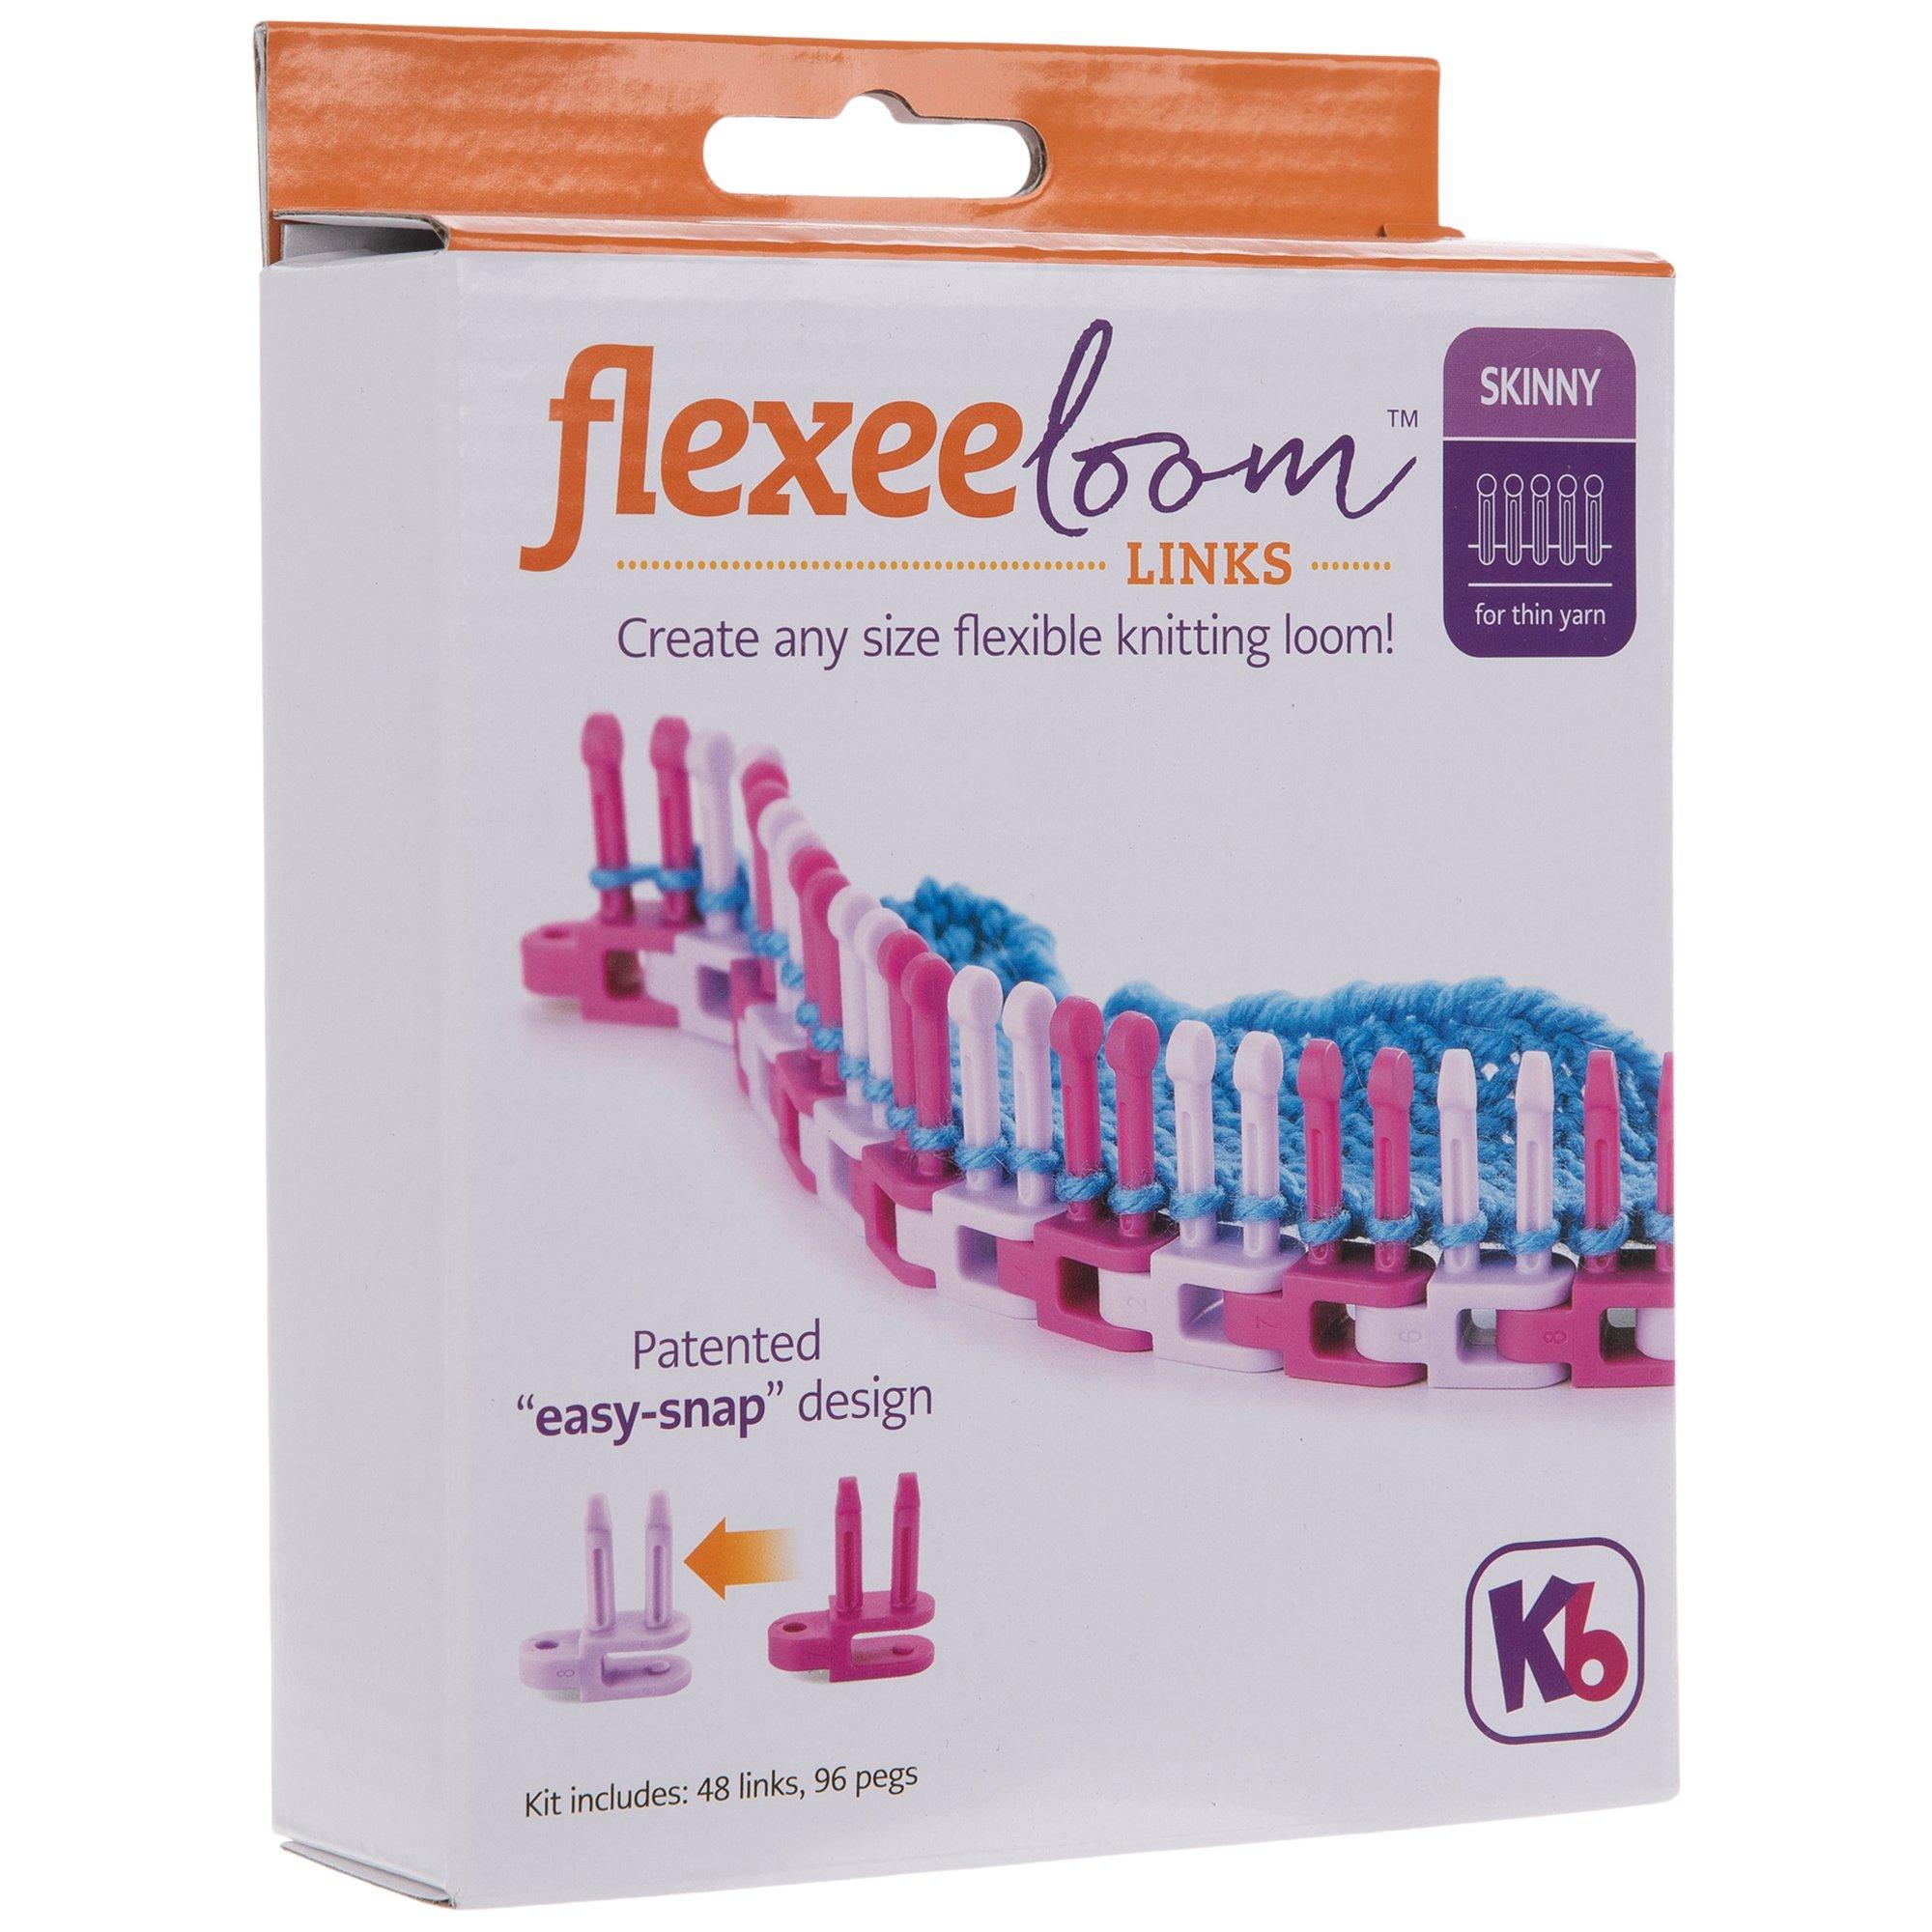 Flexee Loom Links Skinny 